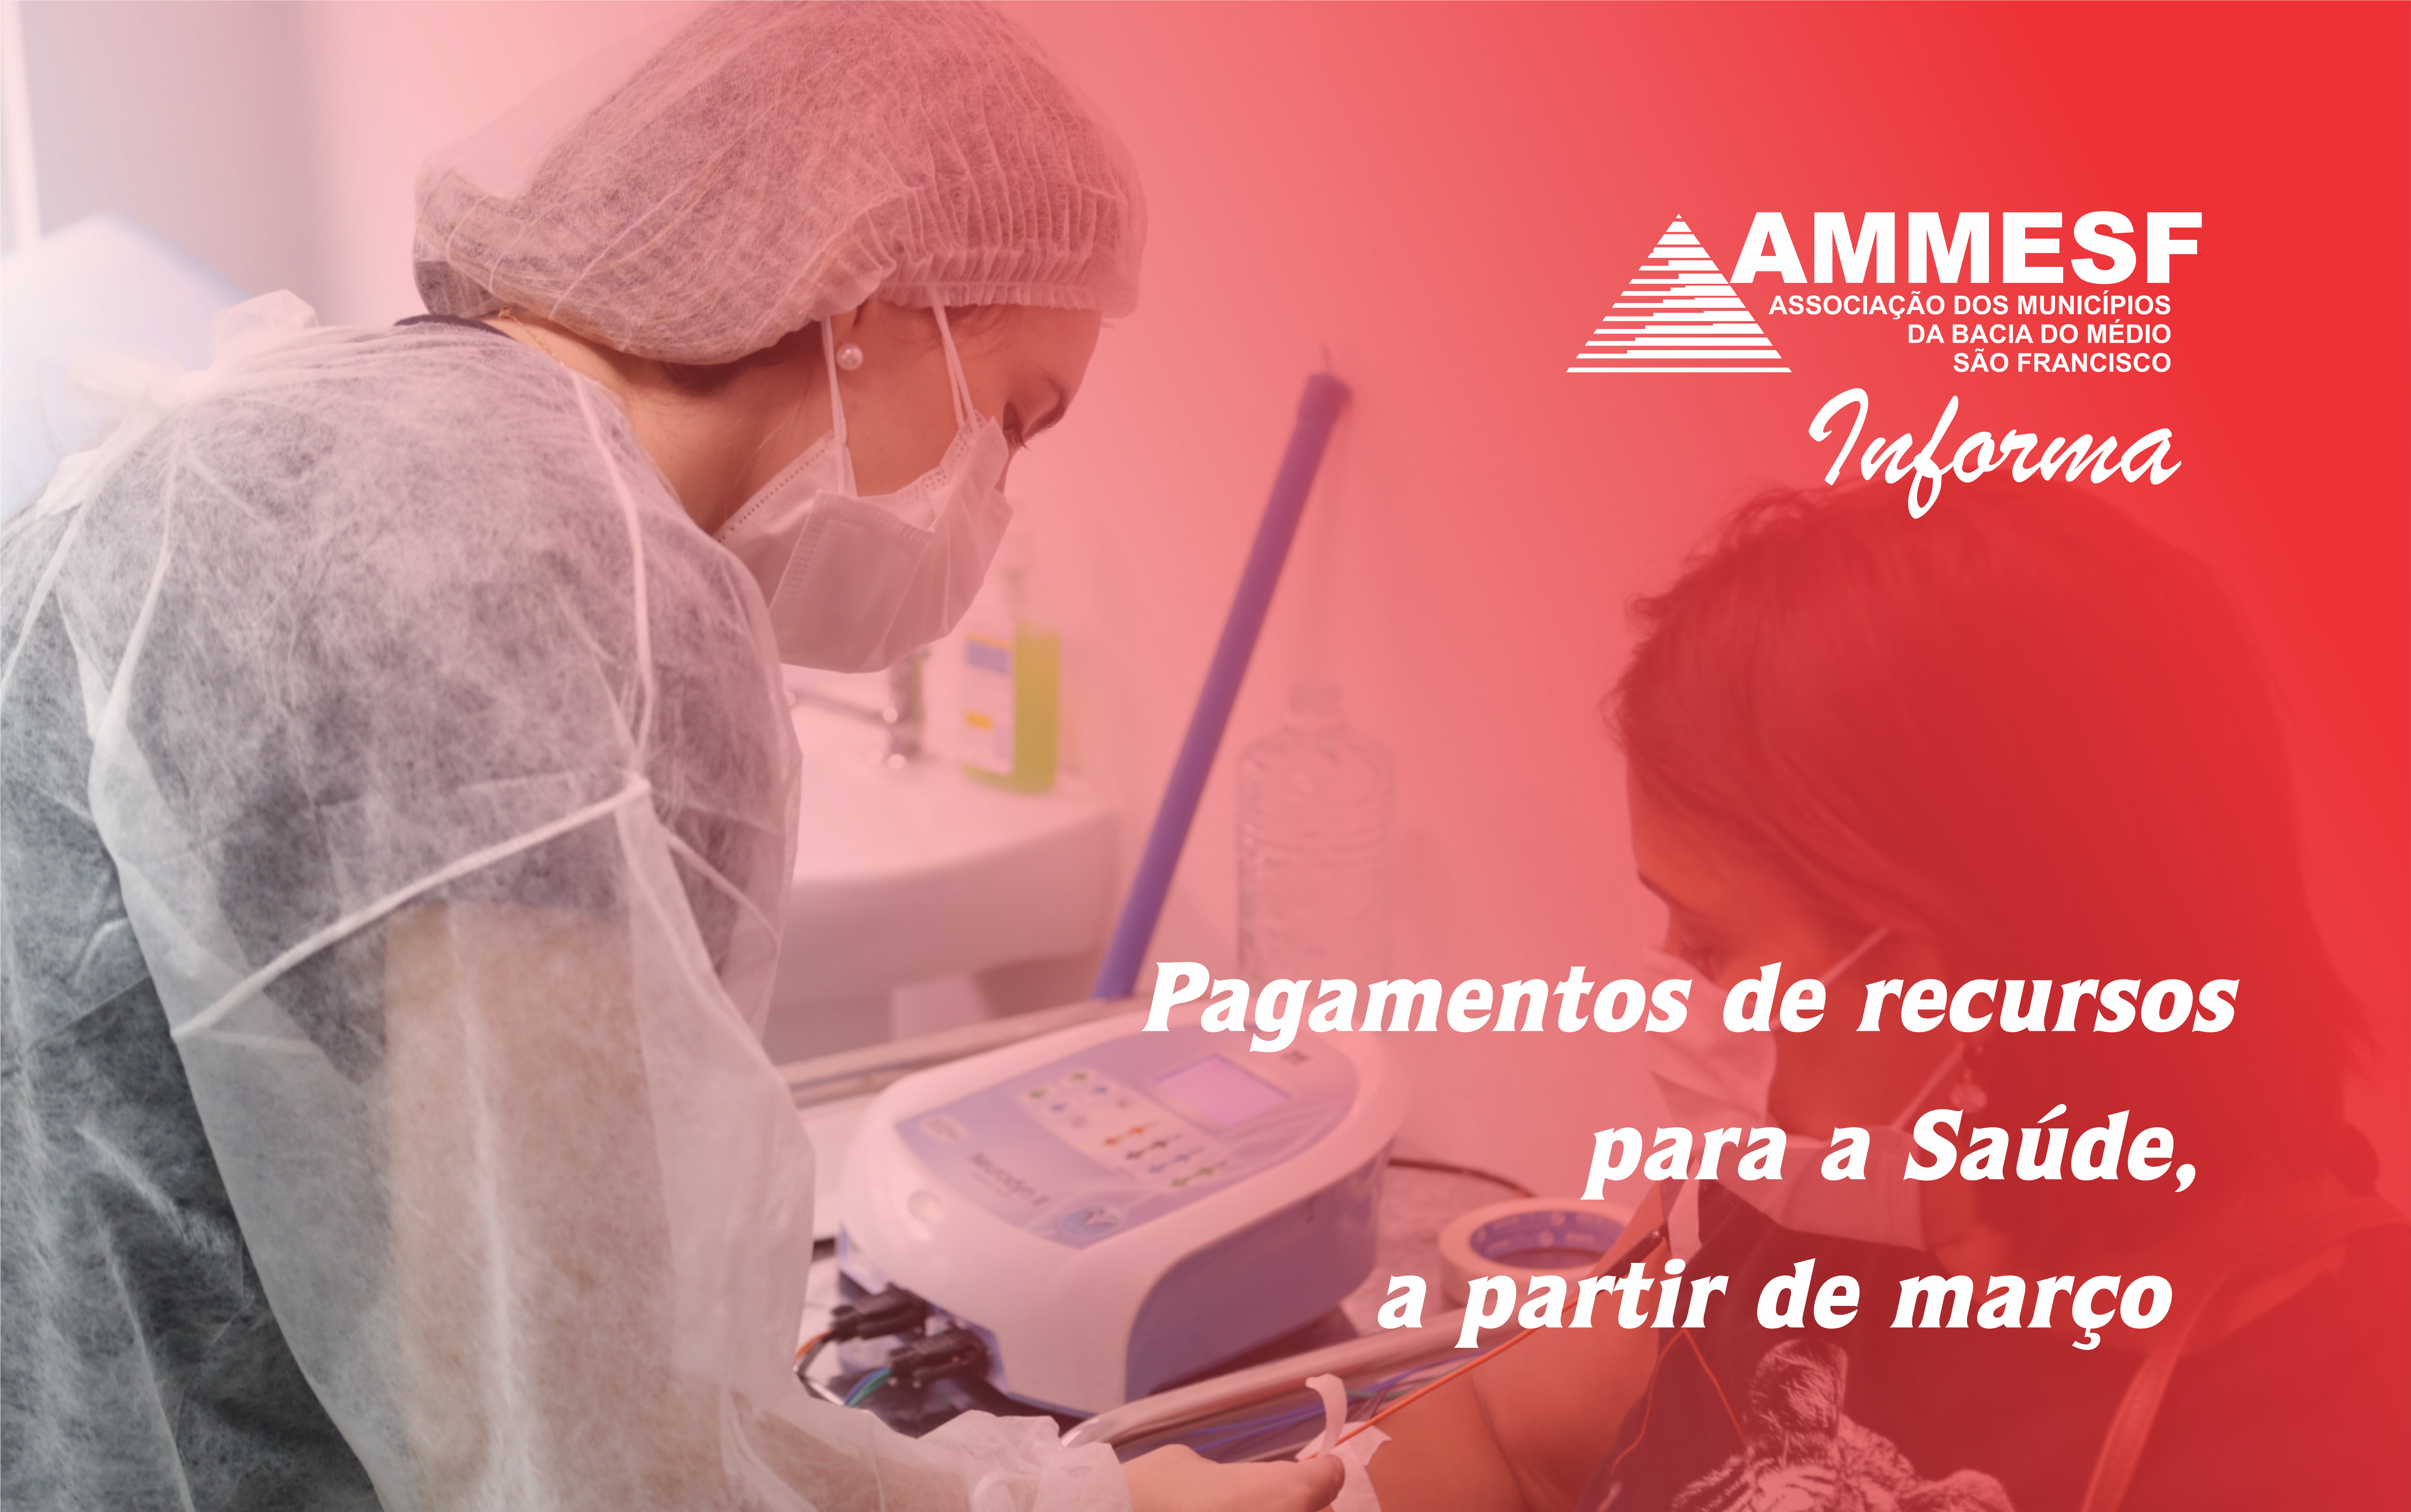 AMMESF informa: Municípios vão receber três parcelas referentes ao Acordo da Saúde, a partir de março